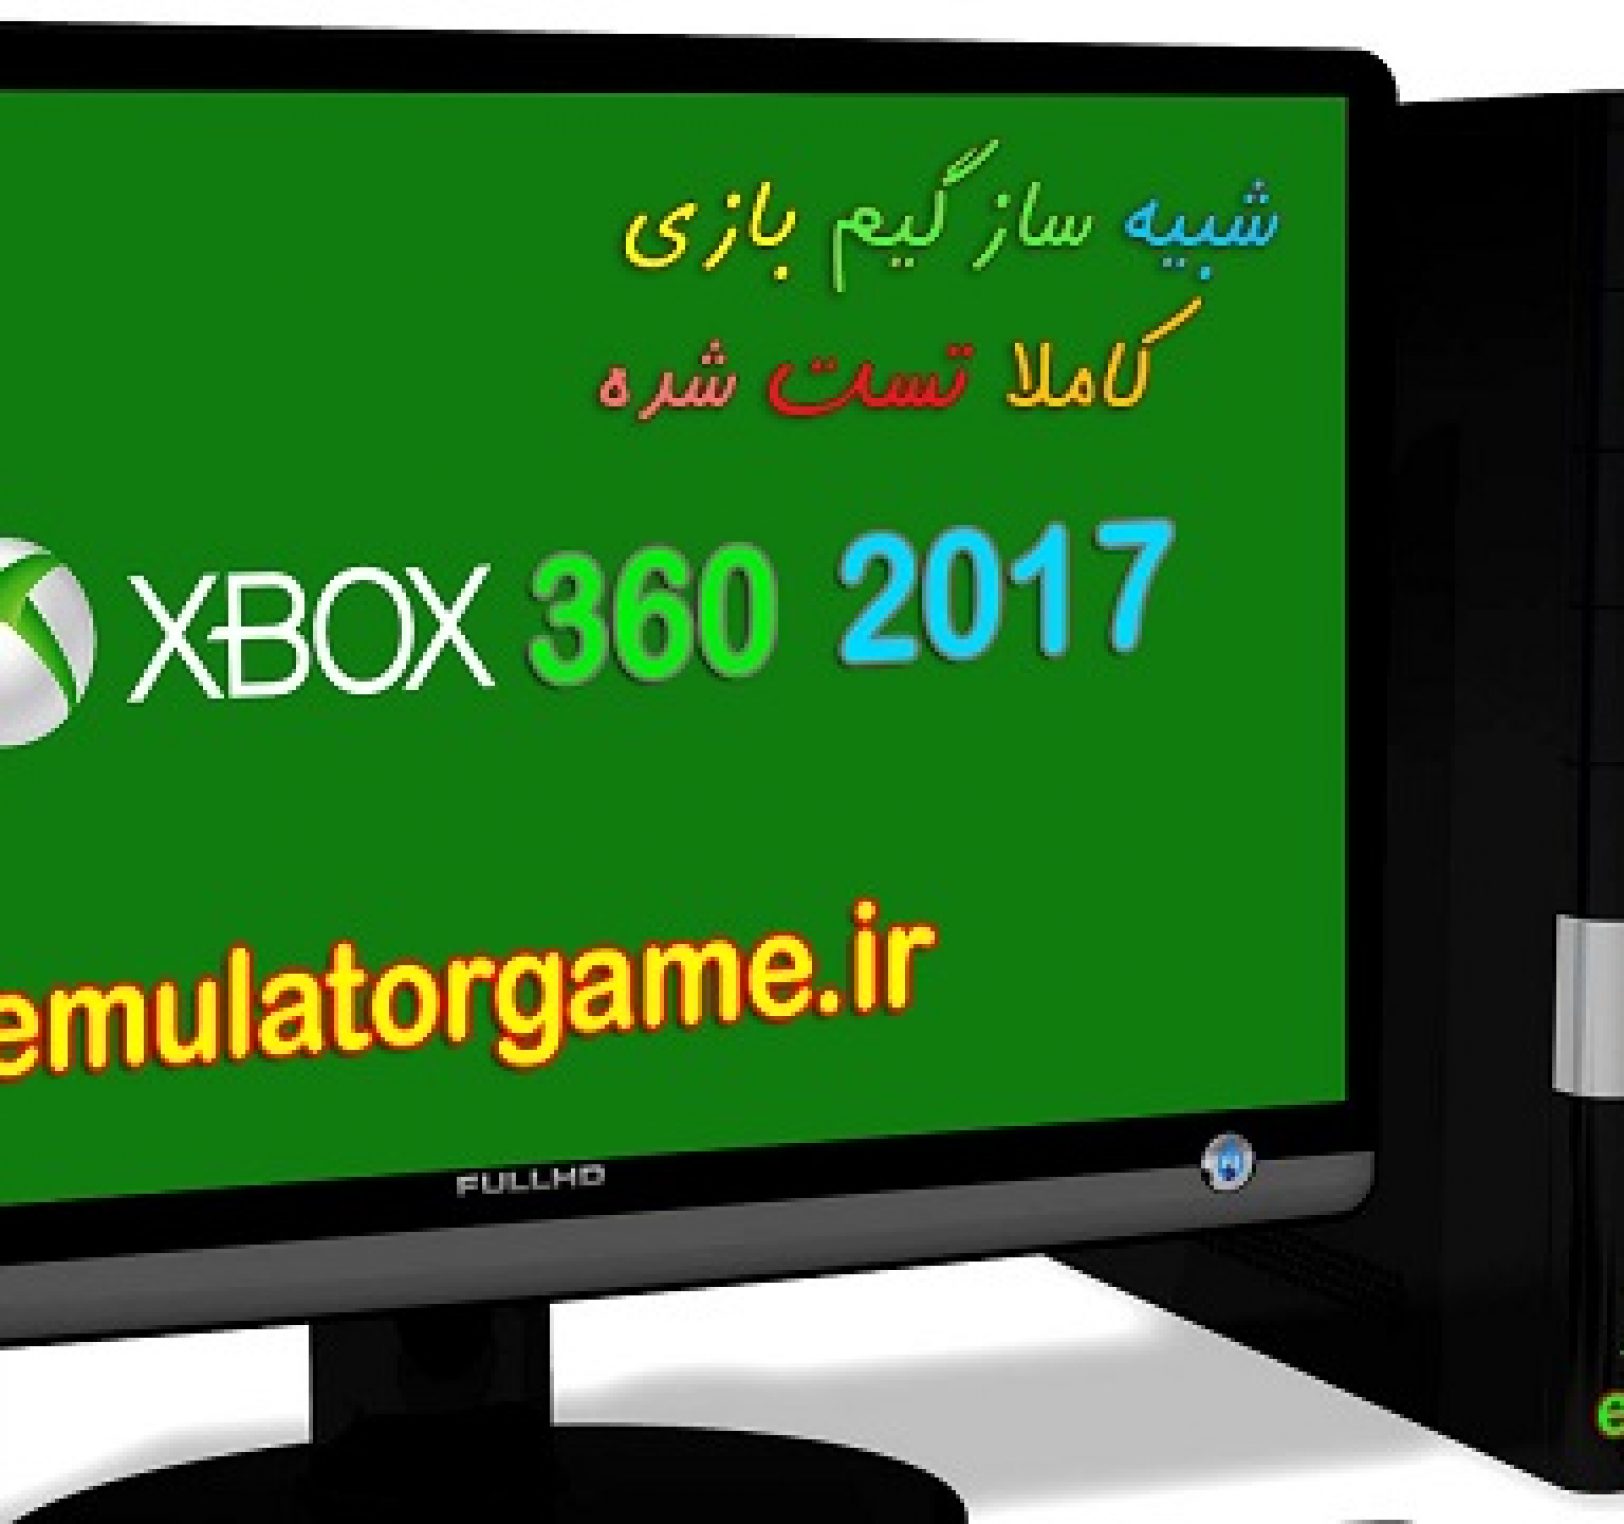 دانلود شبیه ساز Emulator xbox360 کامپیوتر 2017 [جدید]